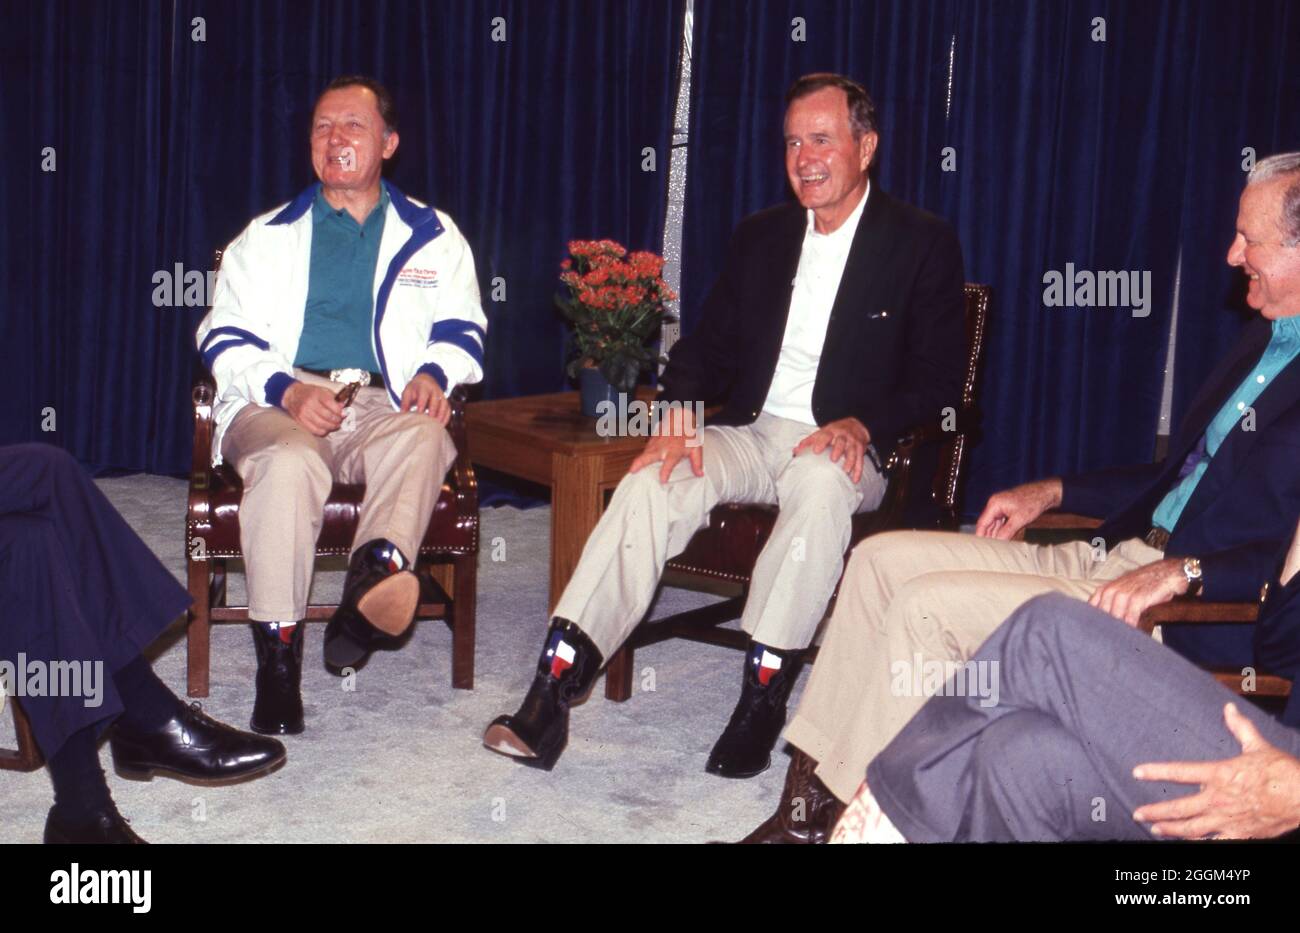 Houston Texas USA, Juli 1990: US-Präsident George H.W. Bush zeigt seine Cowboystiefel im texanischen Stil während einer informellen Veranstaltung mit anderen Weltführern während des Houston Economic Summit of Industrialized Nations. ©Bob Daemmrich Stockfoto